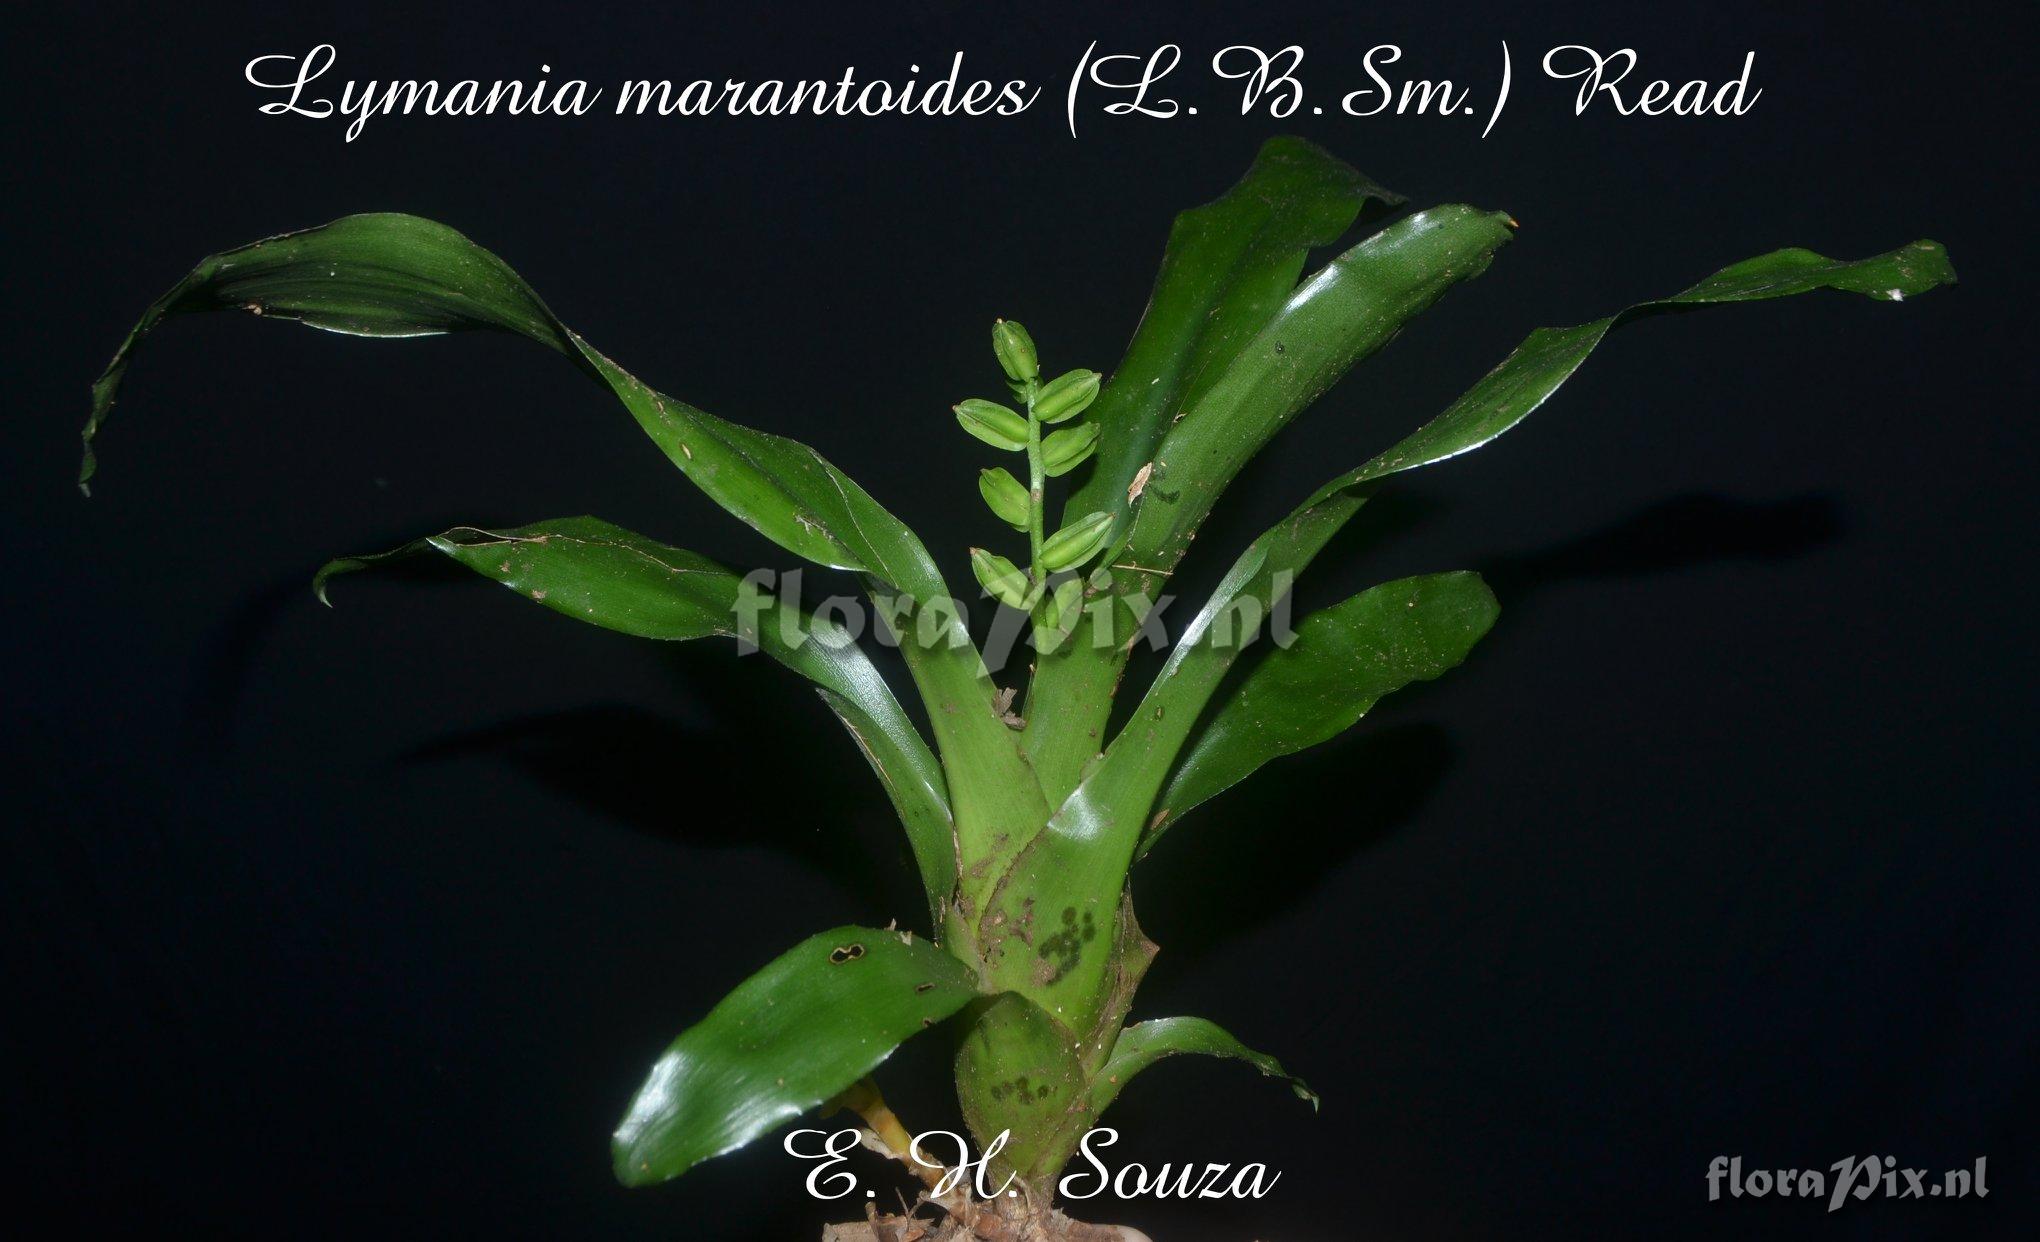 Lymania marantoides